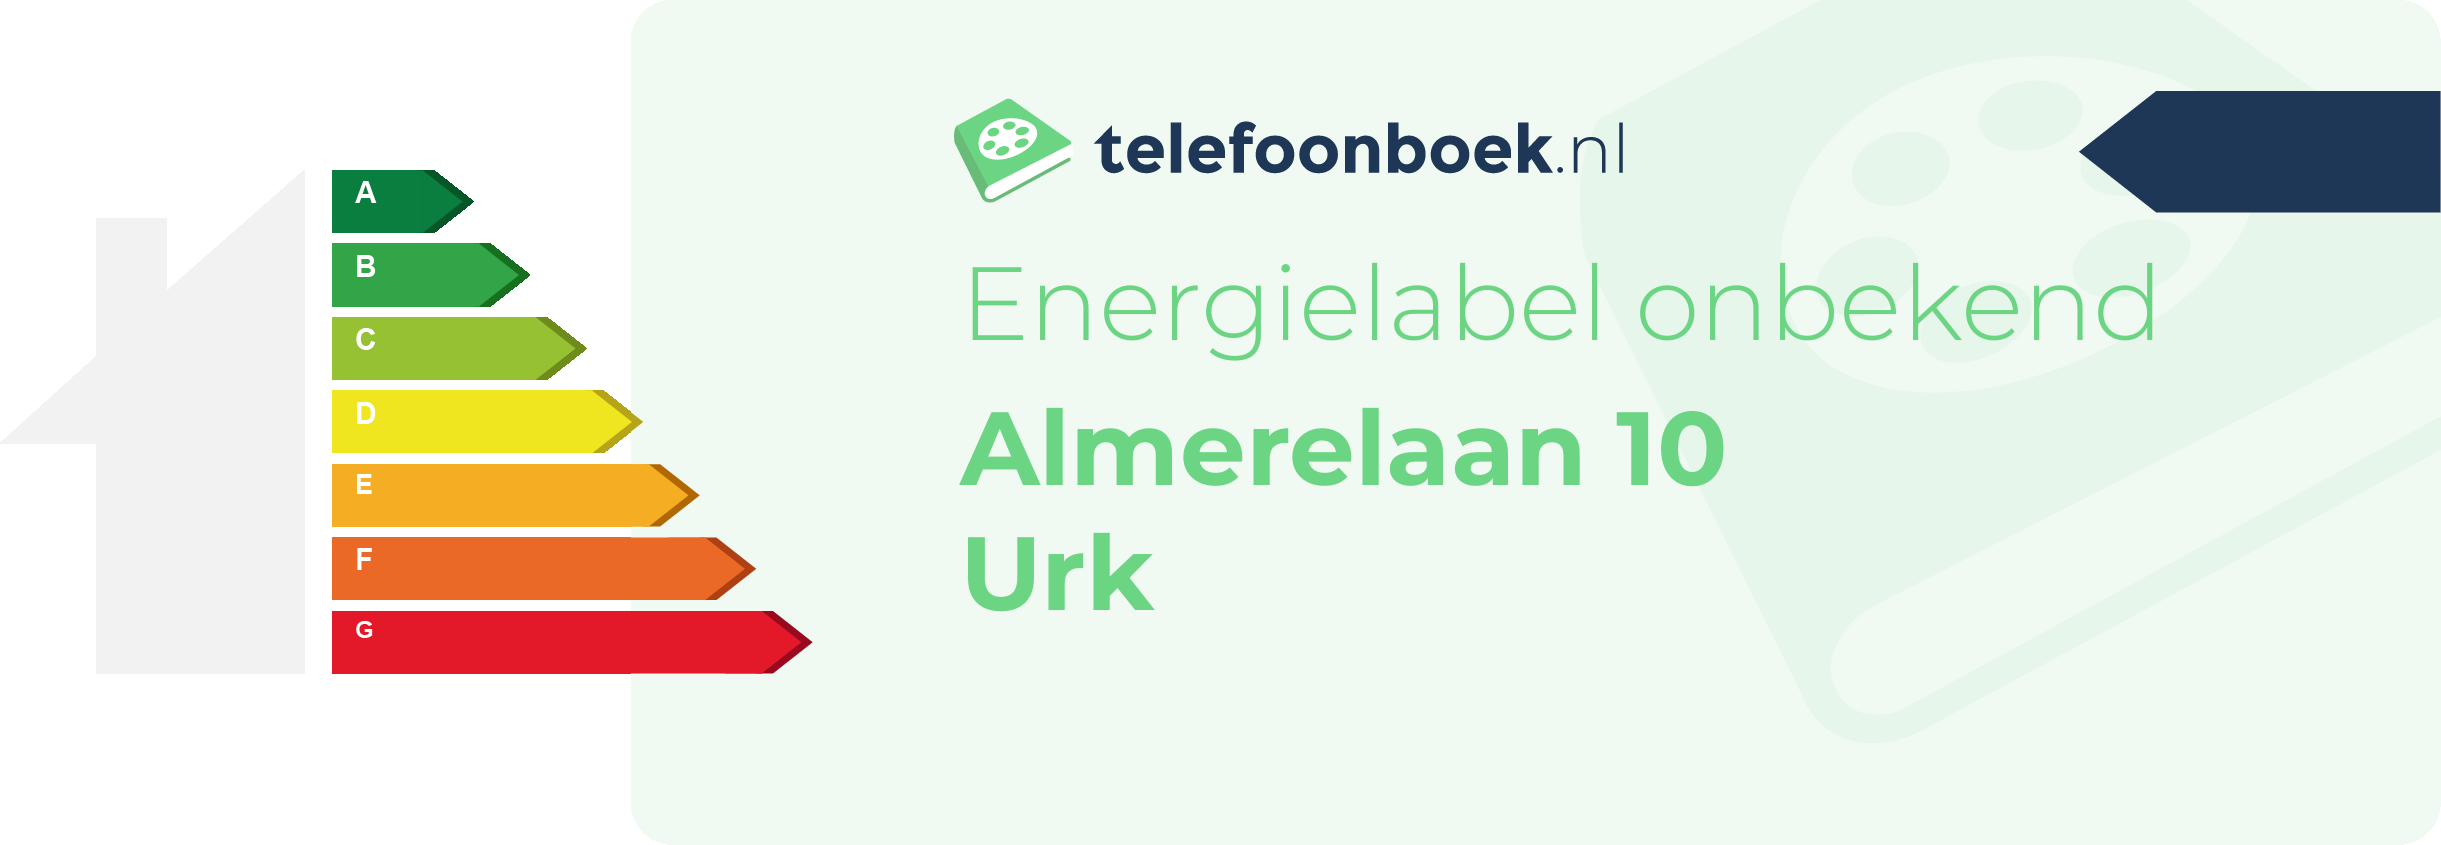 Energielabel Almerelaan 10 Urk